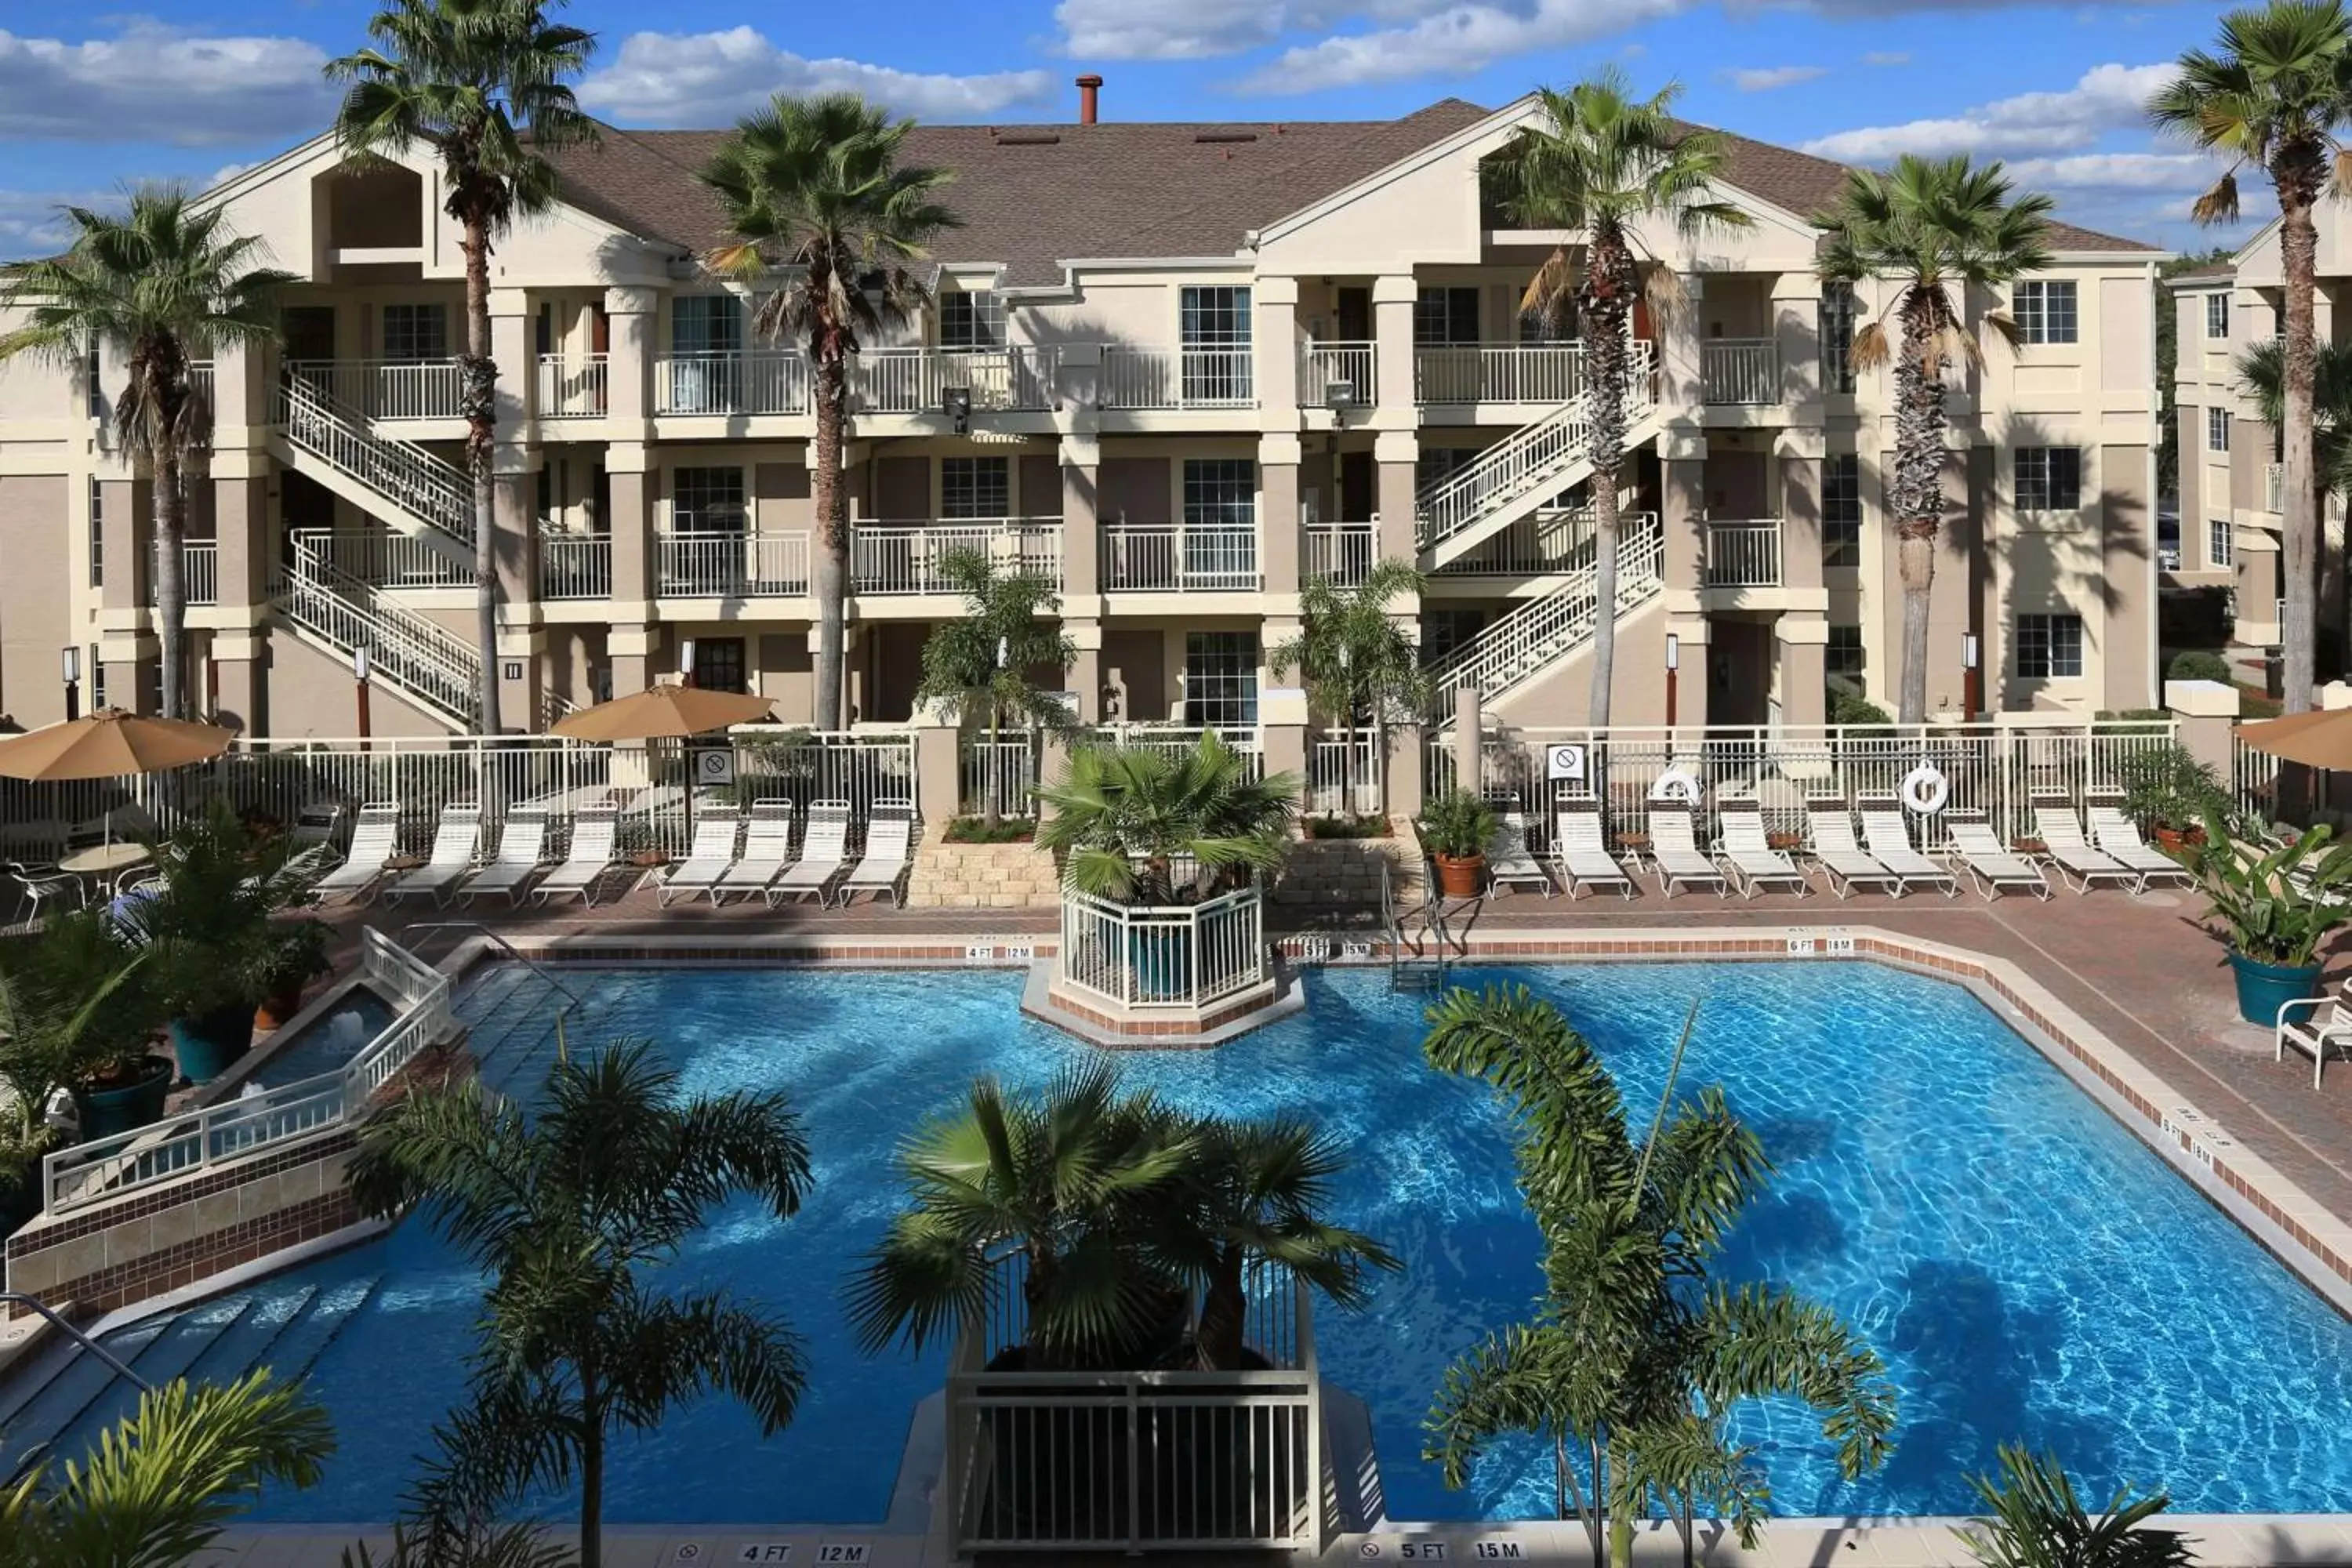 Property building, Swimming Pool in Sonesta ES Suites Orlando - Lake Buena Vista